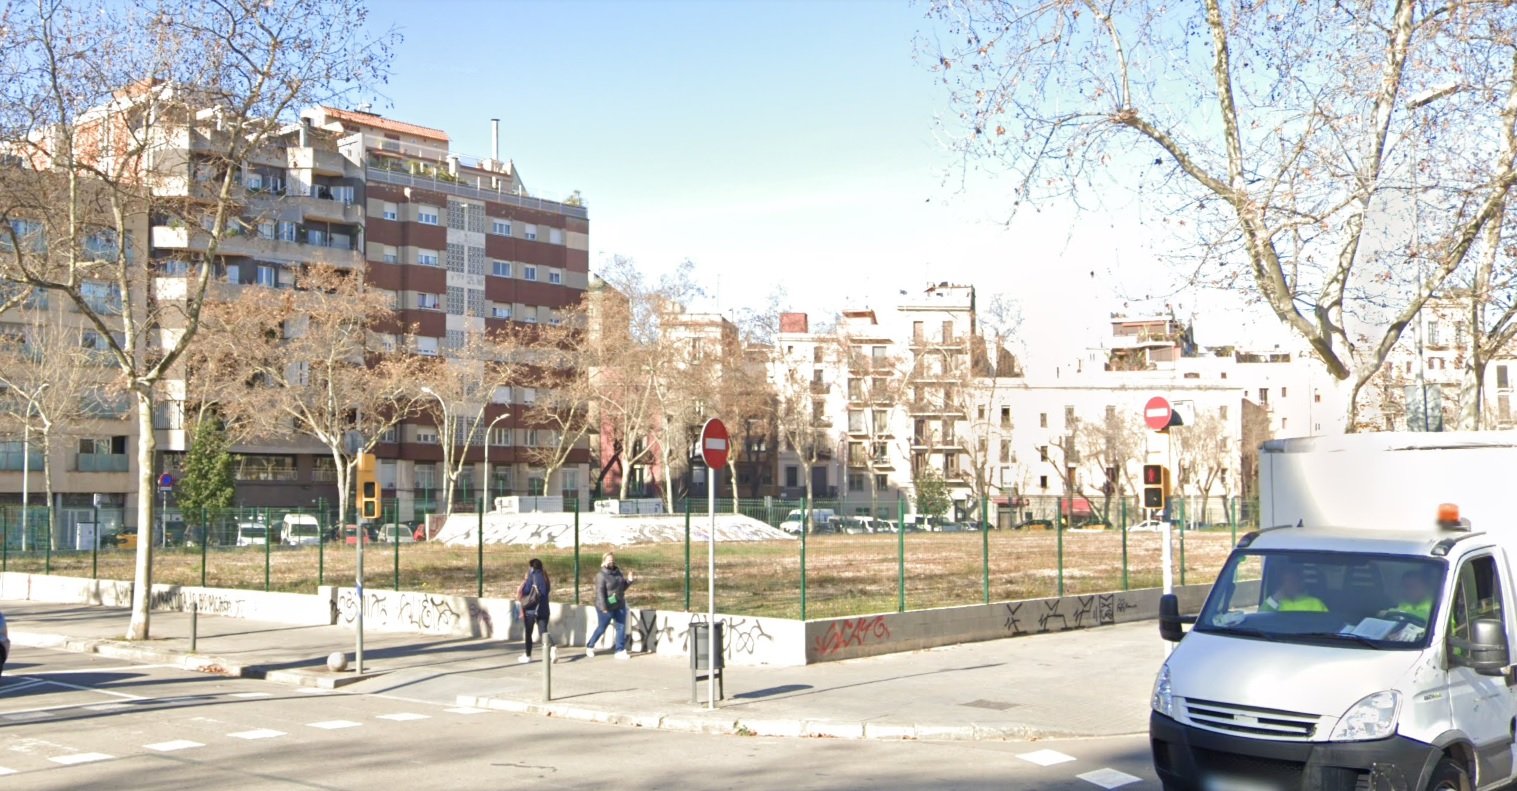 Cinc instal·lacions efímeres sorprendran barcelonins i visitants els propers dies